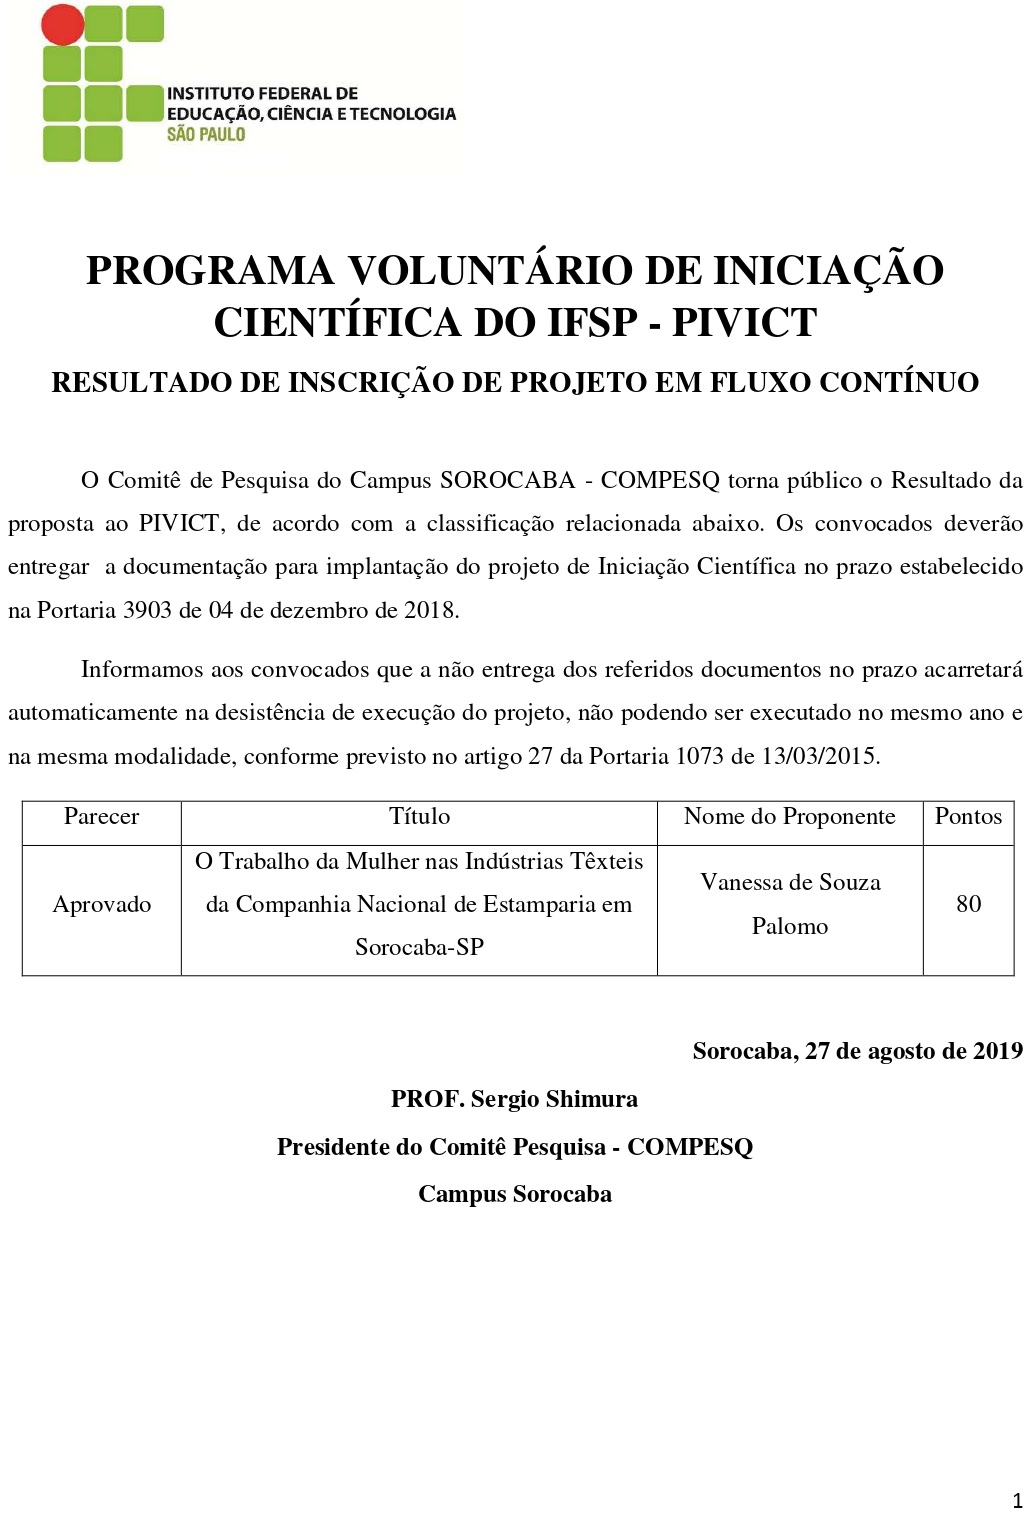 2019.08.28 Divulgacao do Resultado PIVICT 2019 pages to jpg 0001